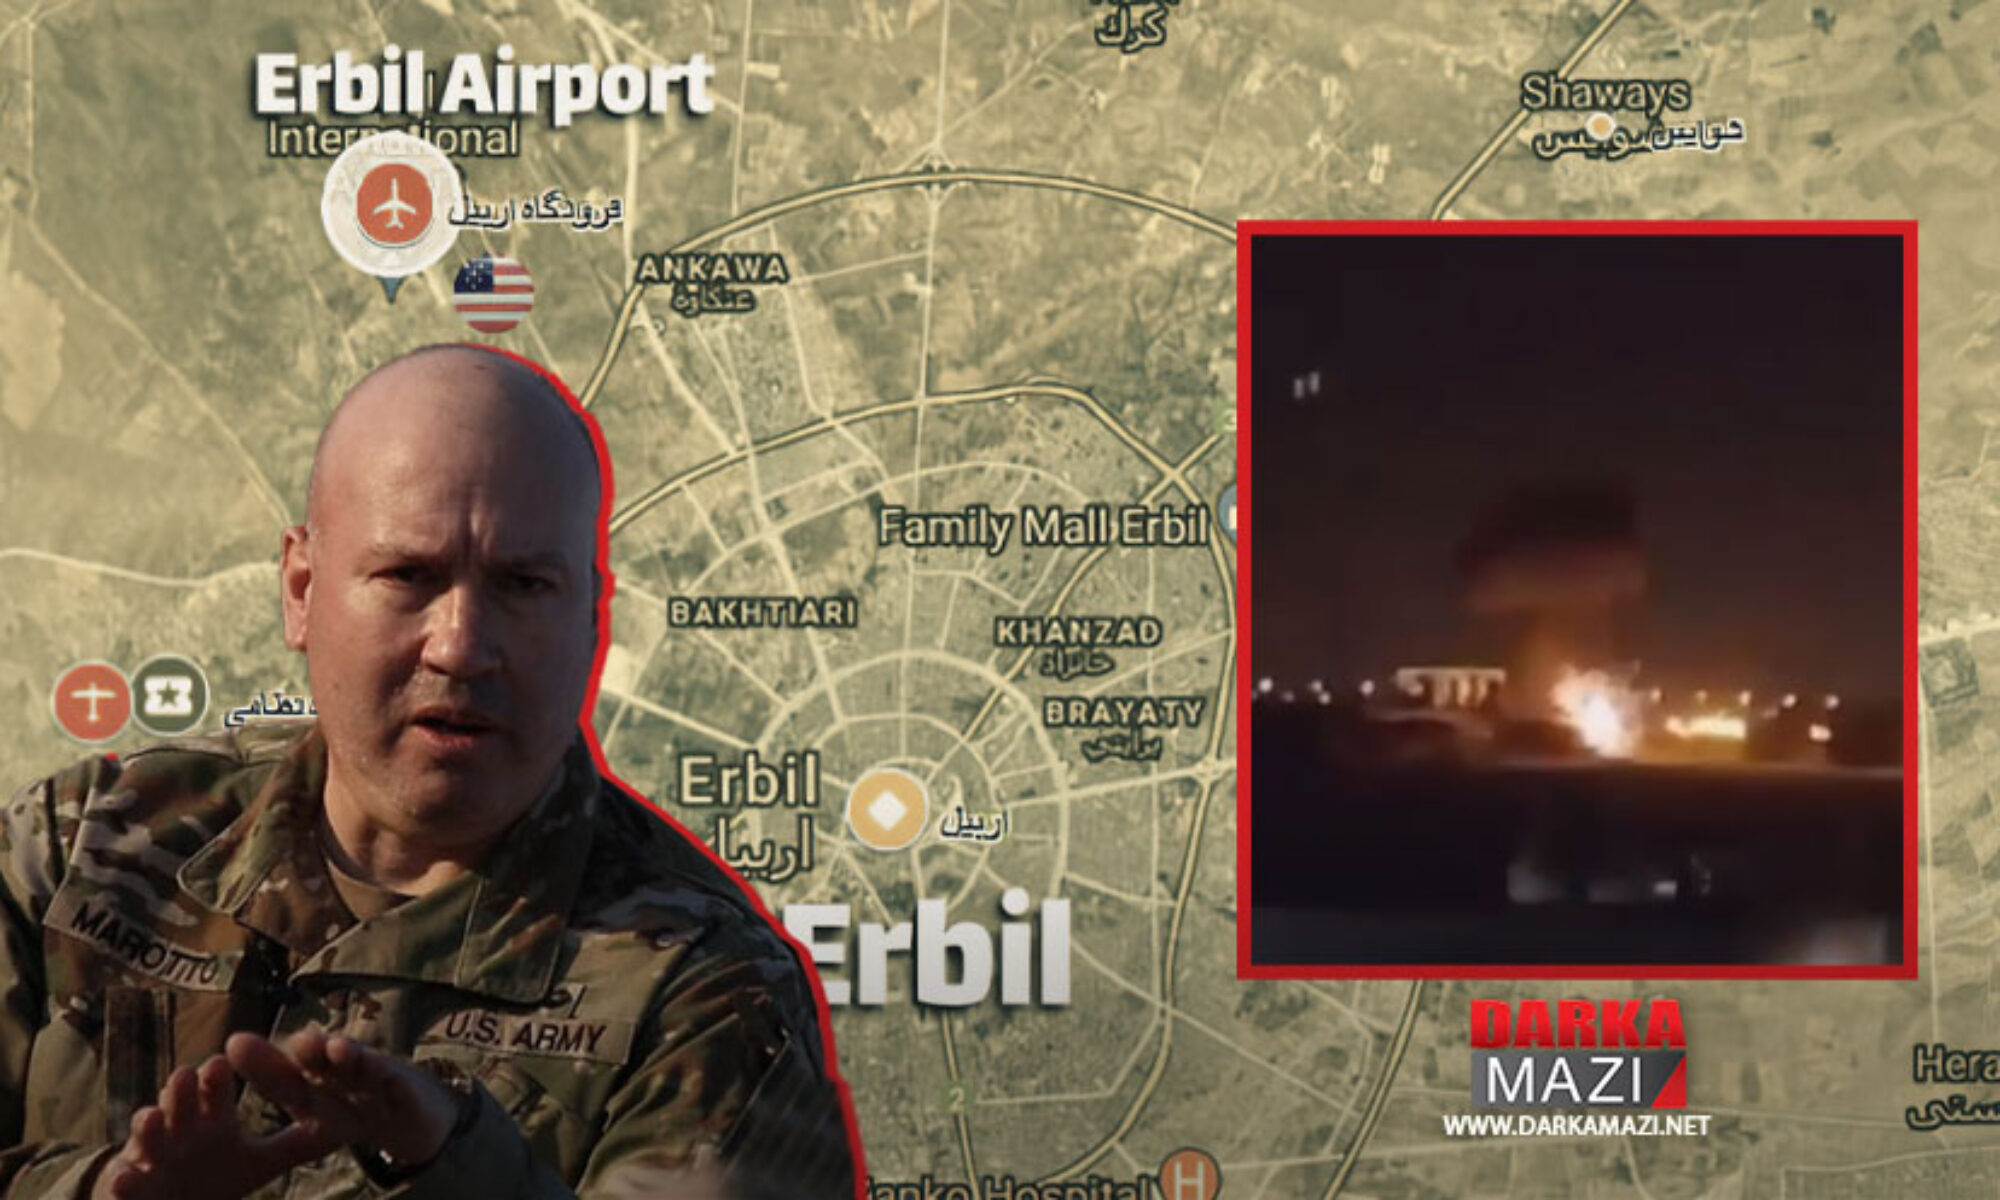 Koalisyon Sözcüsü dün Erbil Uluslararası Havalimanına yapılan saldırıya dönük açıklama yaptı